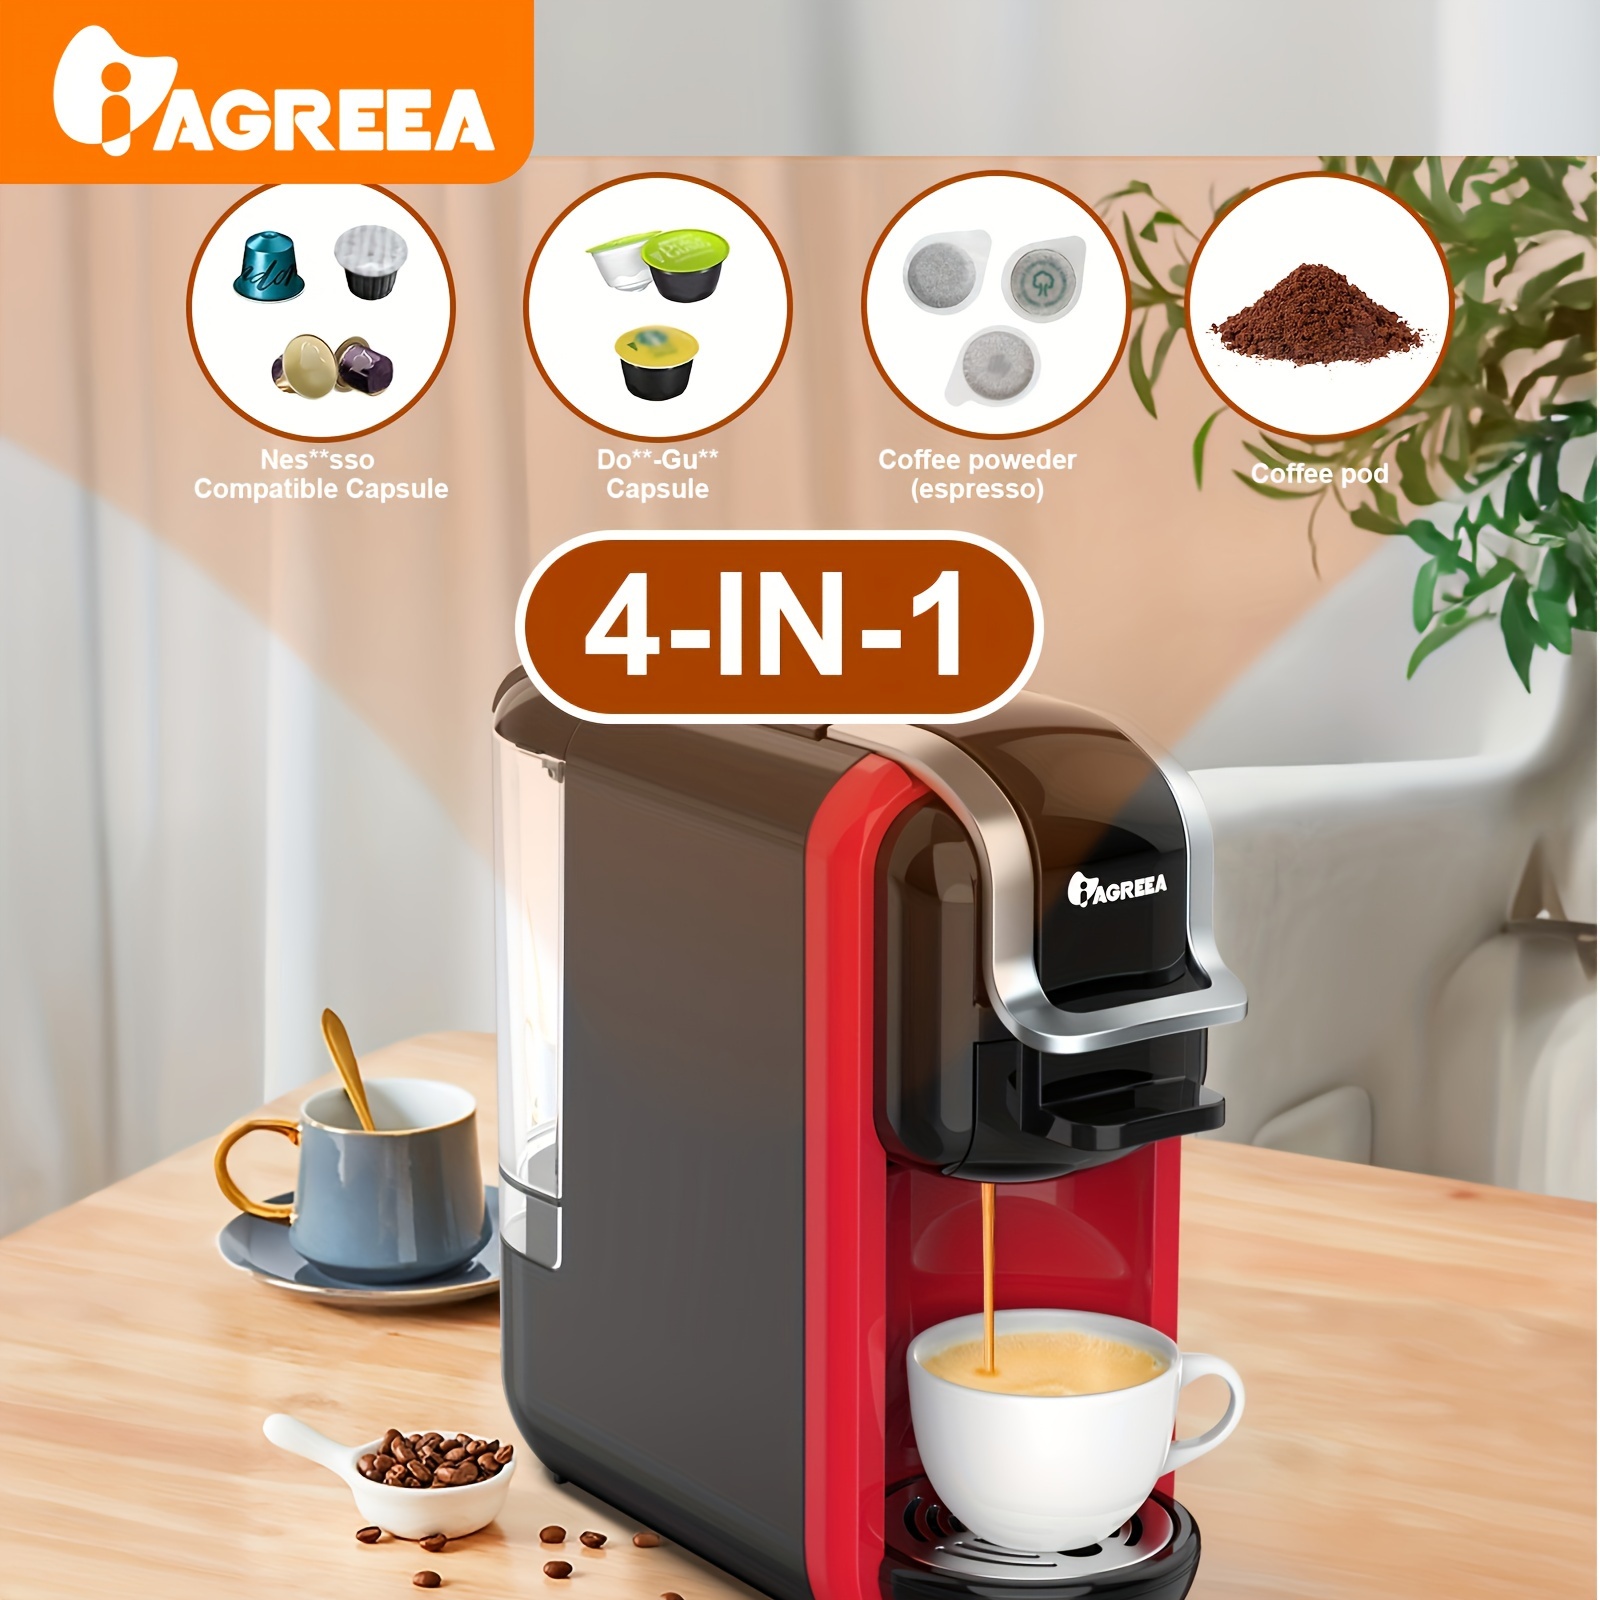  HIBREW Máquina de café espresso 3 en 1 para cápsulas, cafetera  de cápsulas de 19 barras, compatible con cápsulas Nes* Original/Molido/DG*,  modo frío/caliente, depósito extraíble de 20 onzas, para taza de